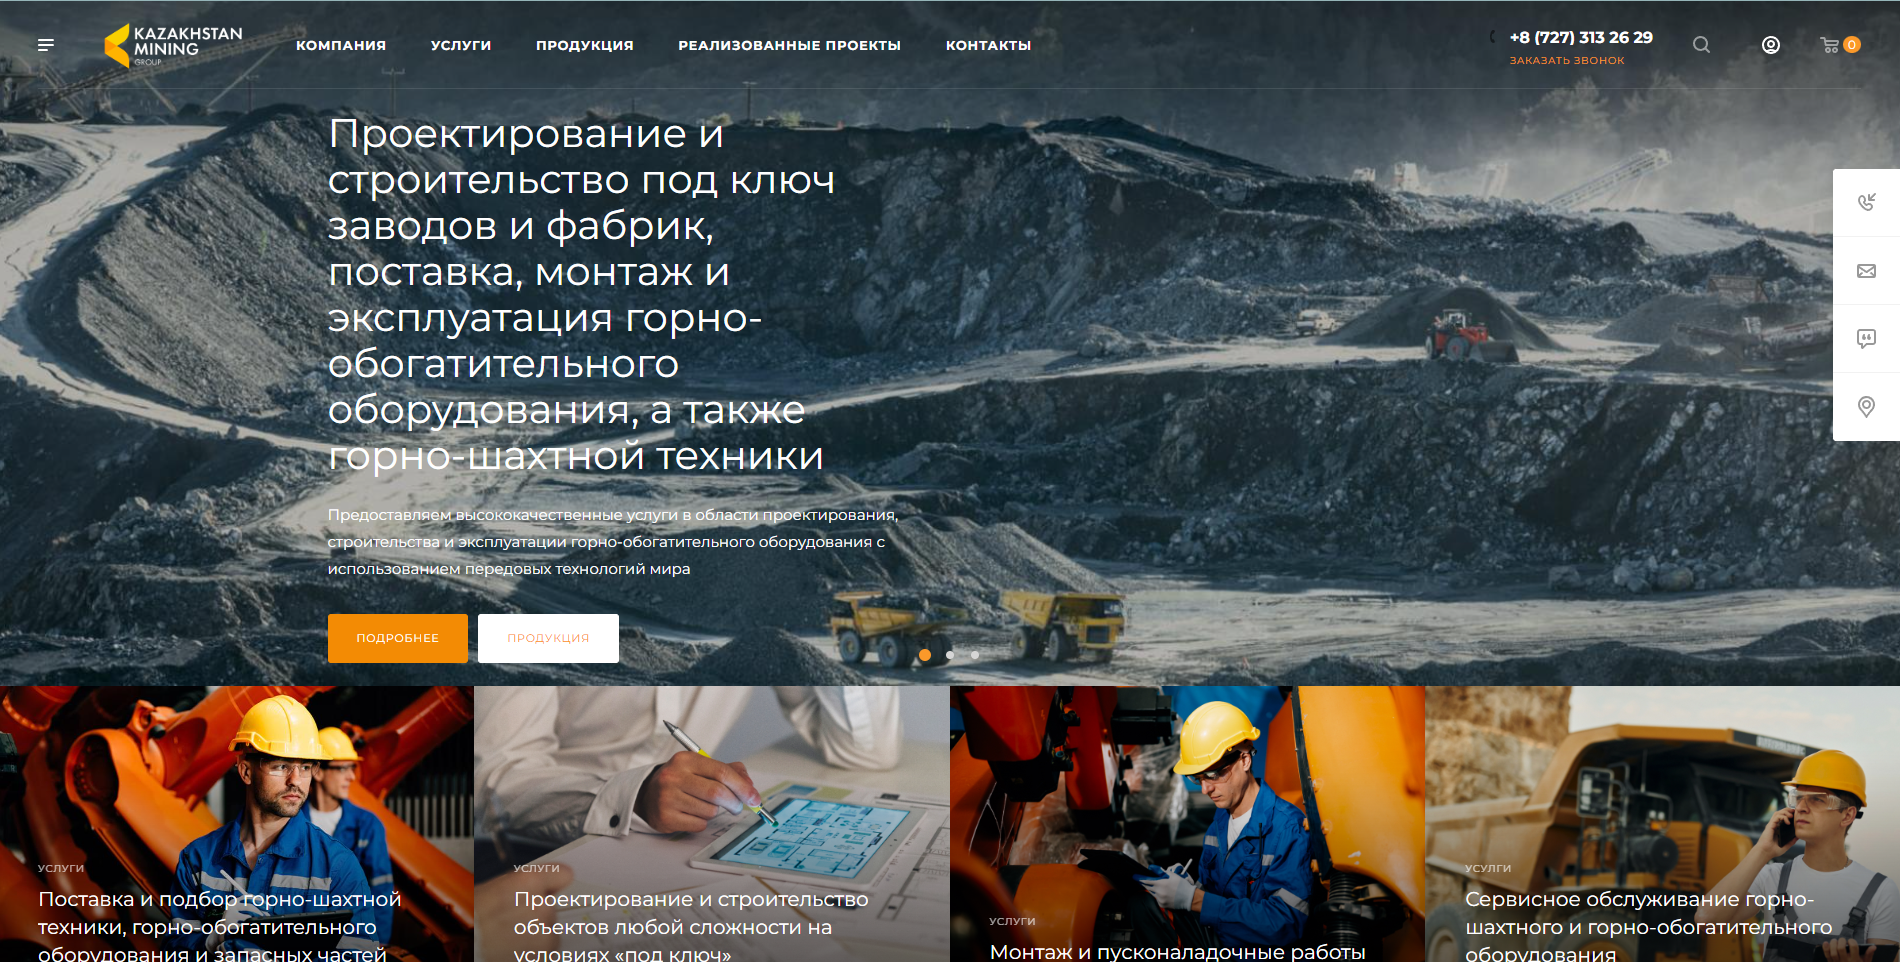 интернет-магазин карьерной, подземной горной техники, горно-обогатительного оборудования и запасных частей too kazakhstan mining group